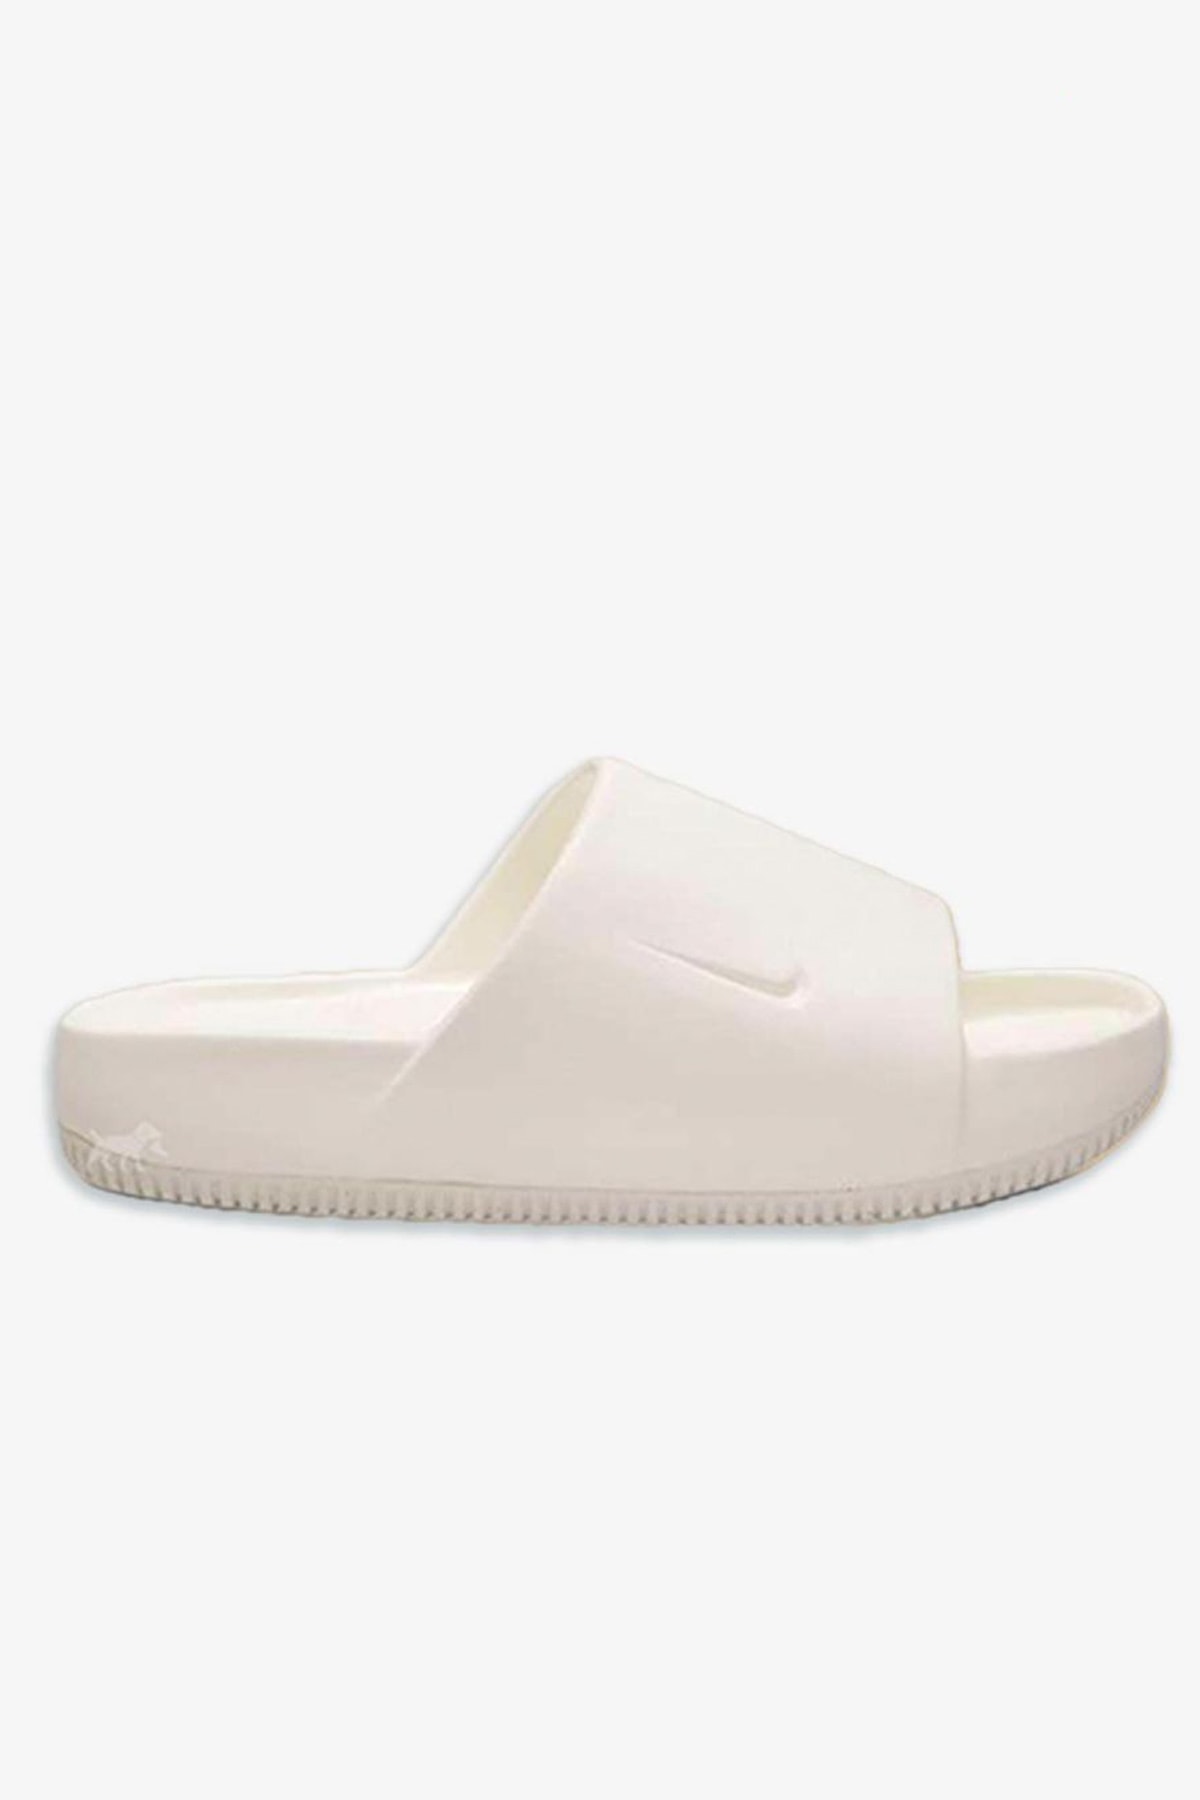 Nike Men's Calm Slide Sandals